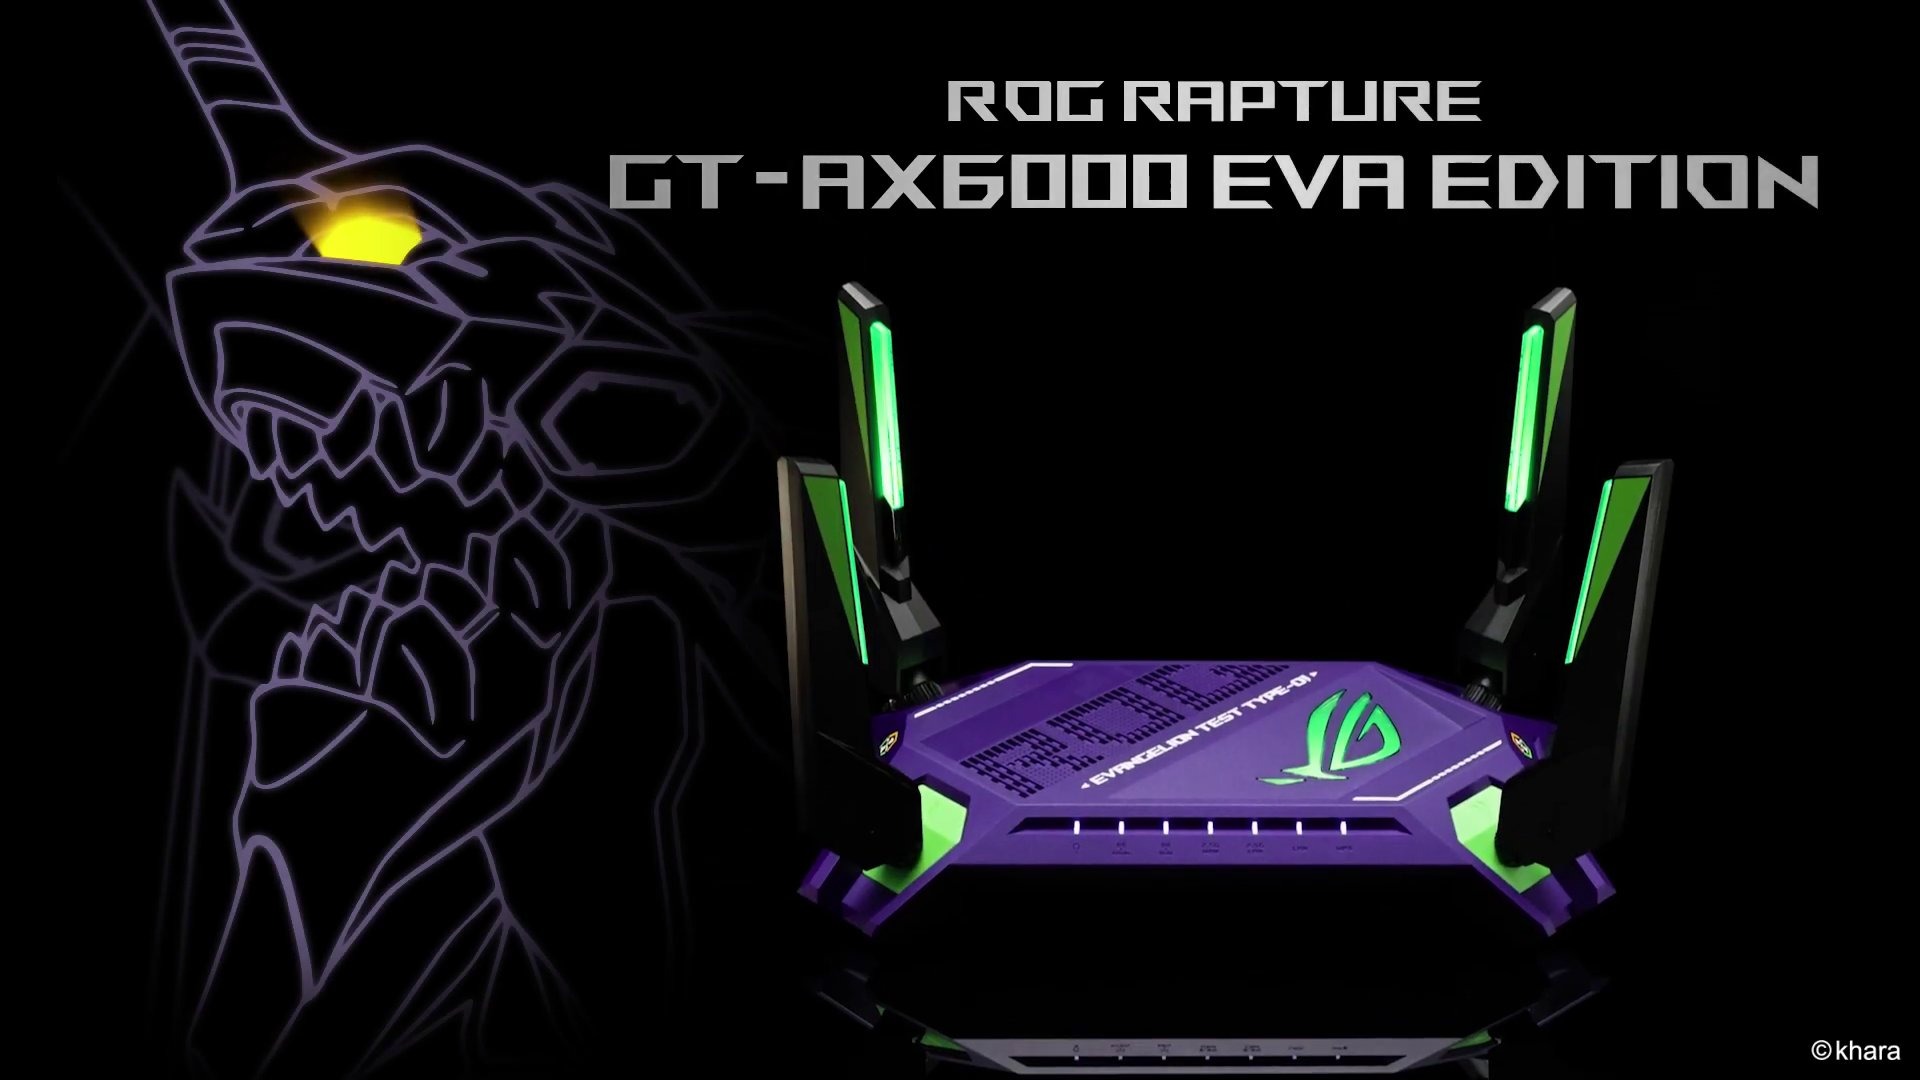 Le routeur aux couleurs d'Evangelion existe, c'est le ROG Rapture GT-AX6000 EVA Edition (et il est dispo)